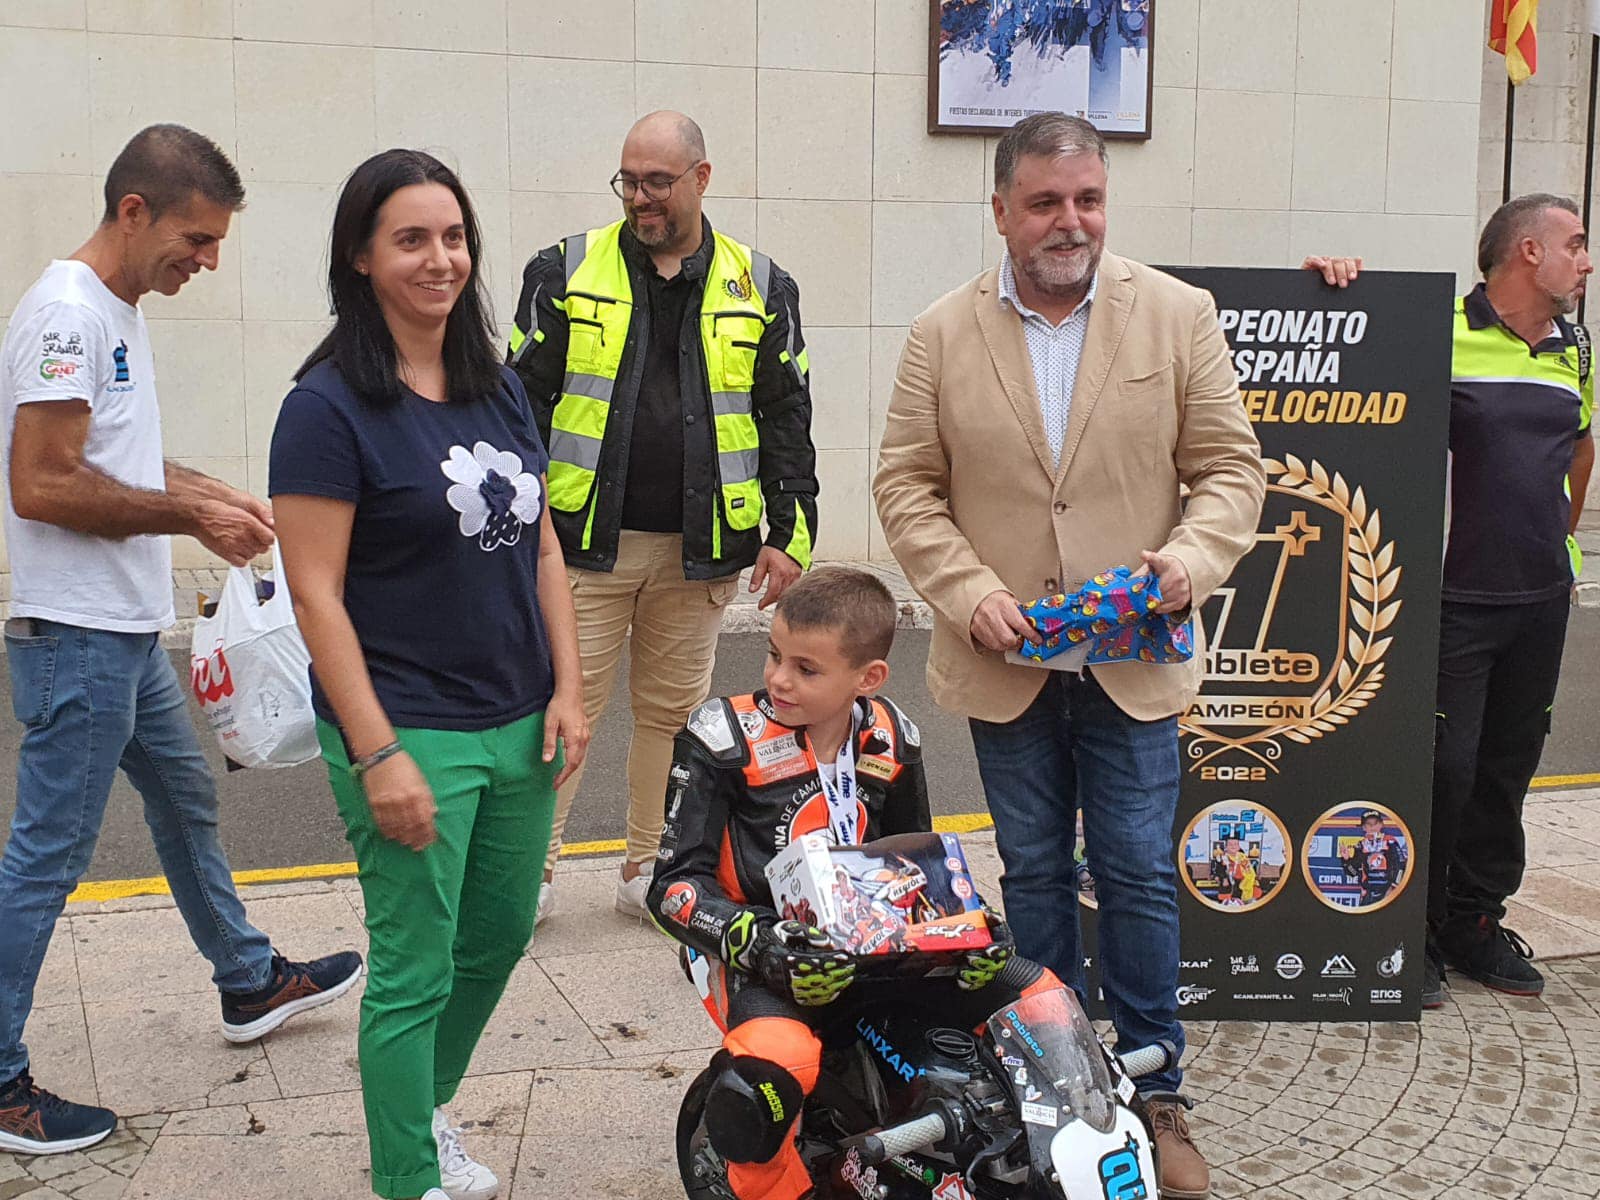 El alcalde de Villena recibe al campeón de España Minimotos, Pablete Arnedo